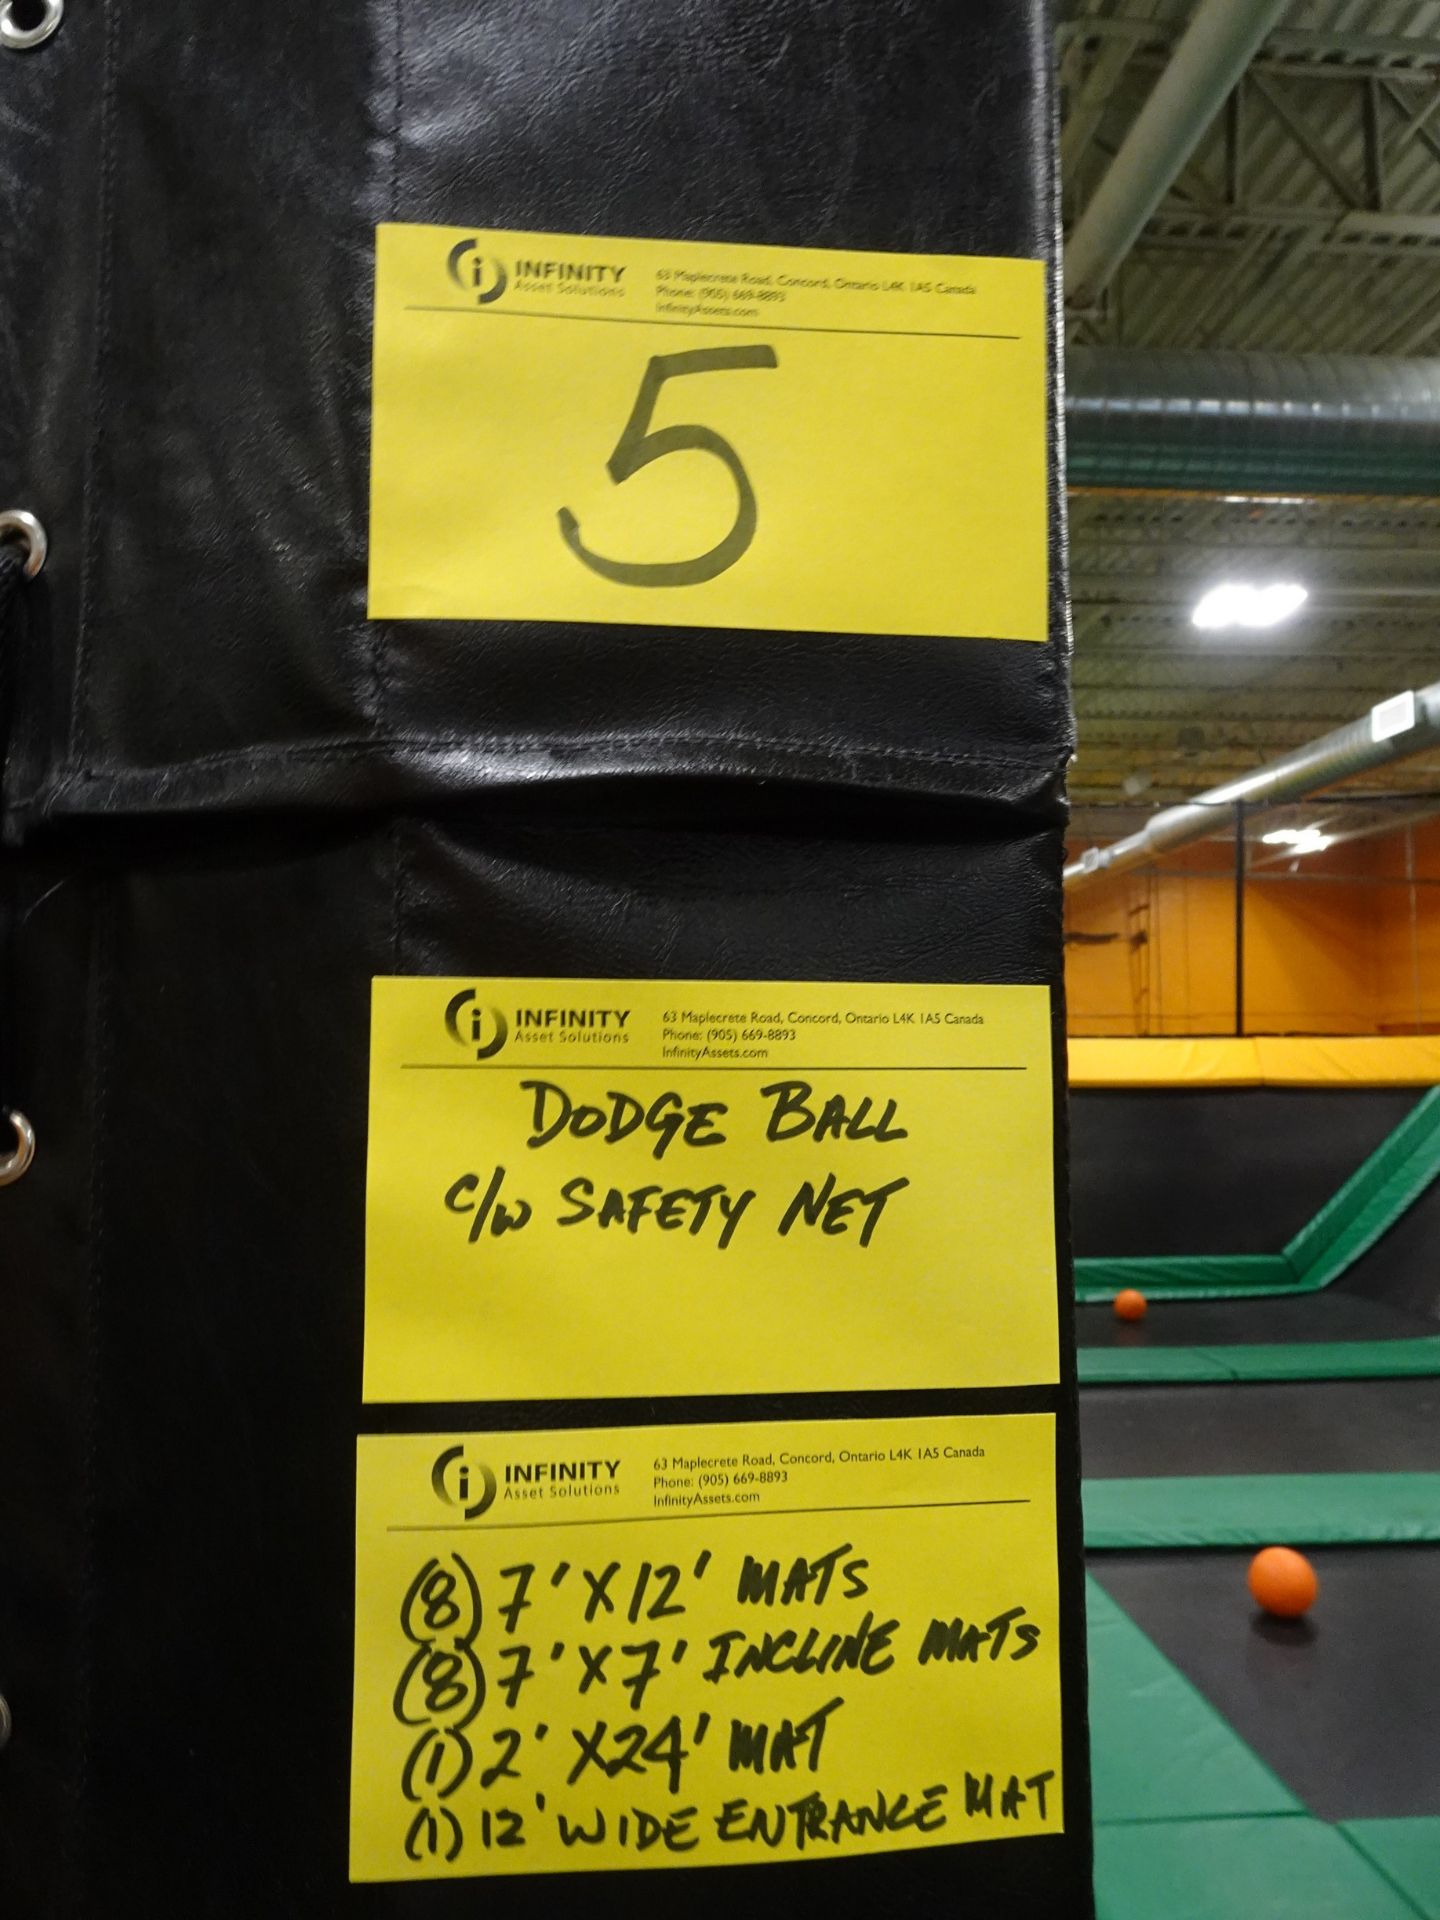 Dodge Ball compete w/ (8) 7' x 12' long mats, (8) 7' x 7' incline mats, (1) 2' x 24' mat, (1) 12' - Image 5 of 9